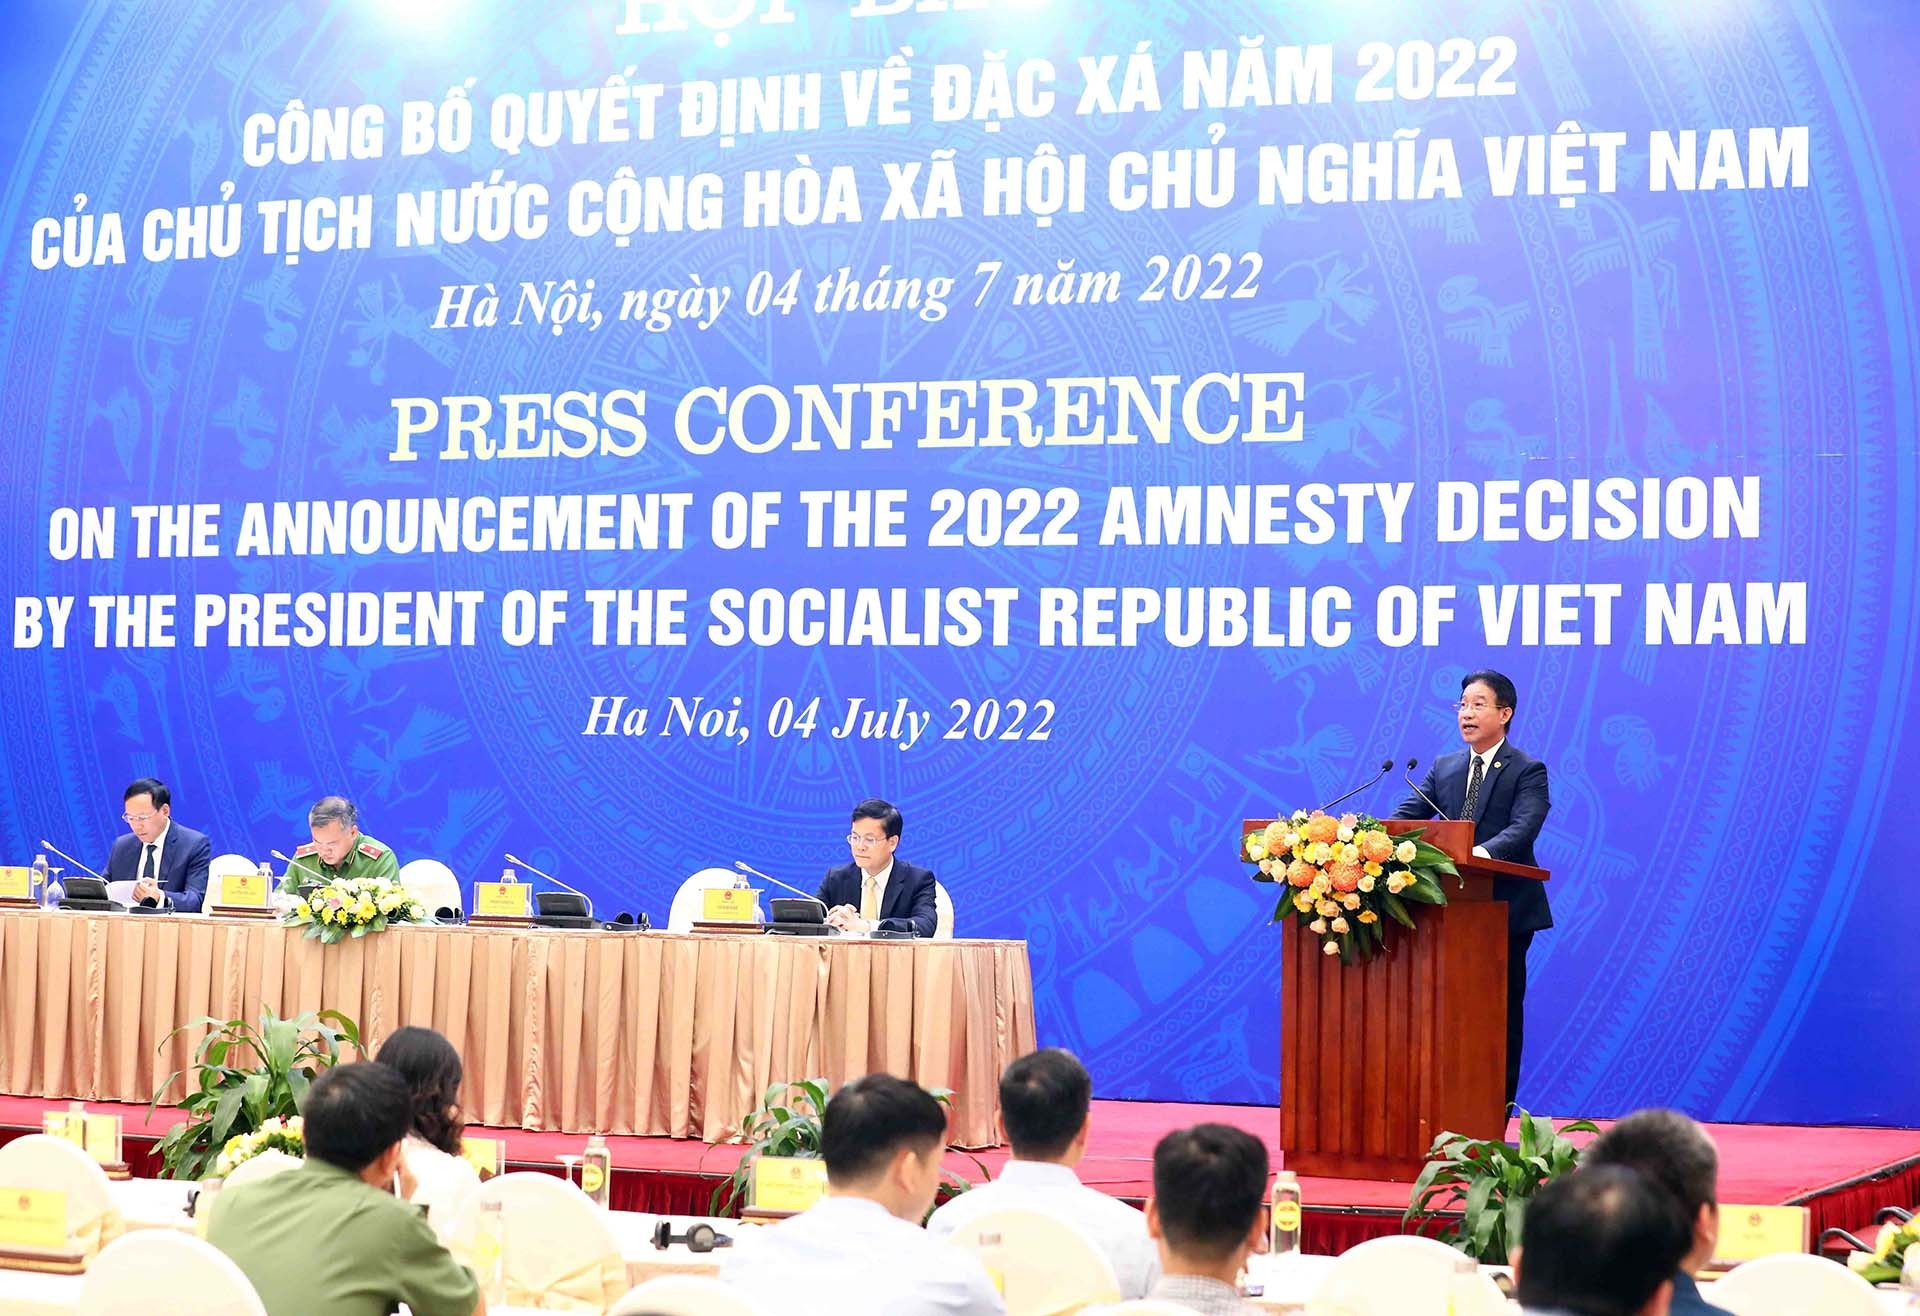 Phó Chủ nhiệm Văn phòng Chủ tịch nước Phạm Thanh Hà công bố Quyết định về đặc xá năm 2022 của Chủ tịch nước. (Nguồn: TTXVN)